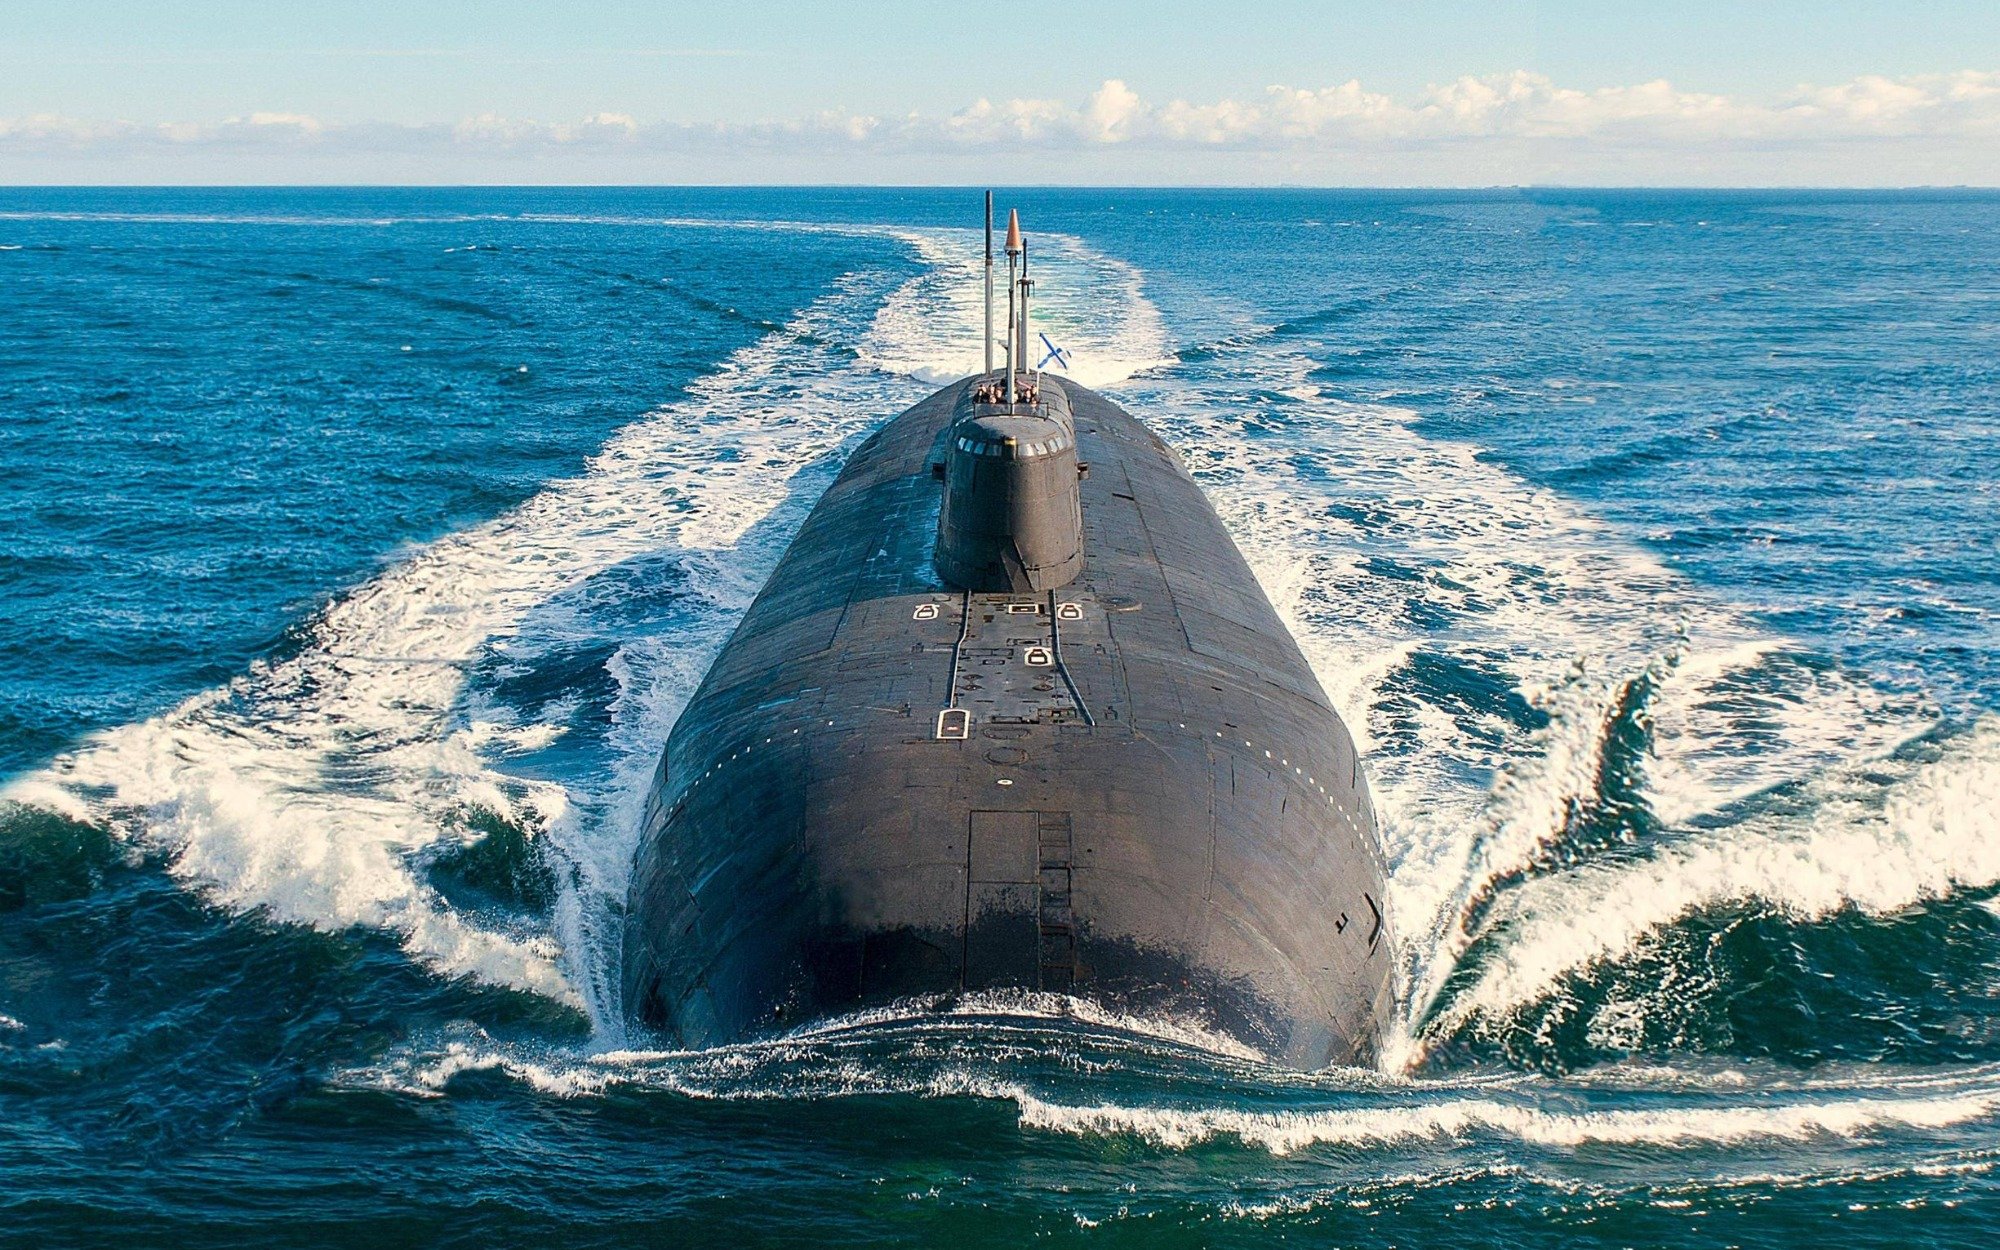 Tajna flota rosyjskich okrętów podwodnych